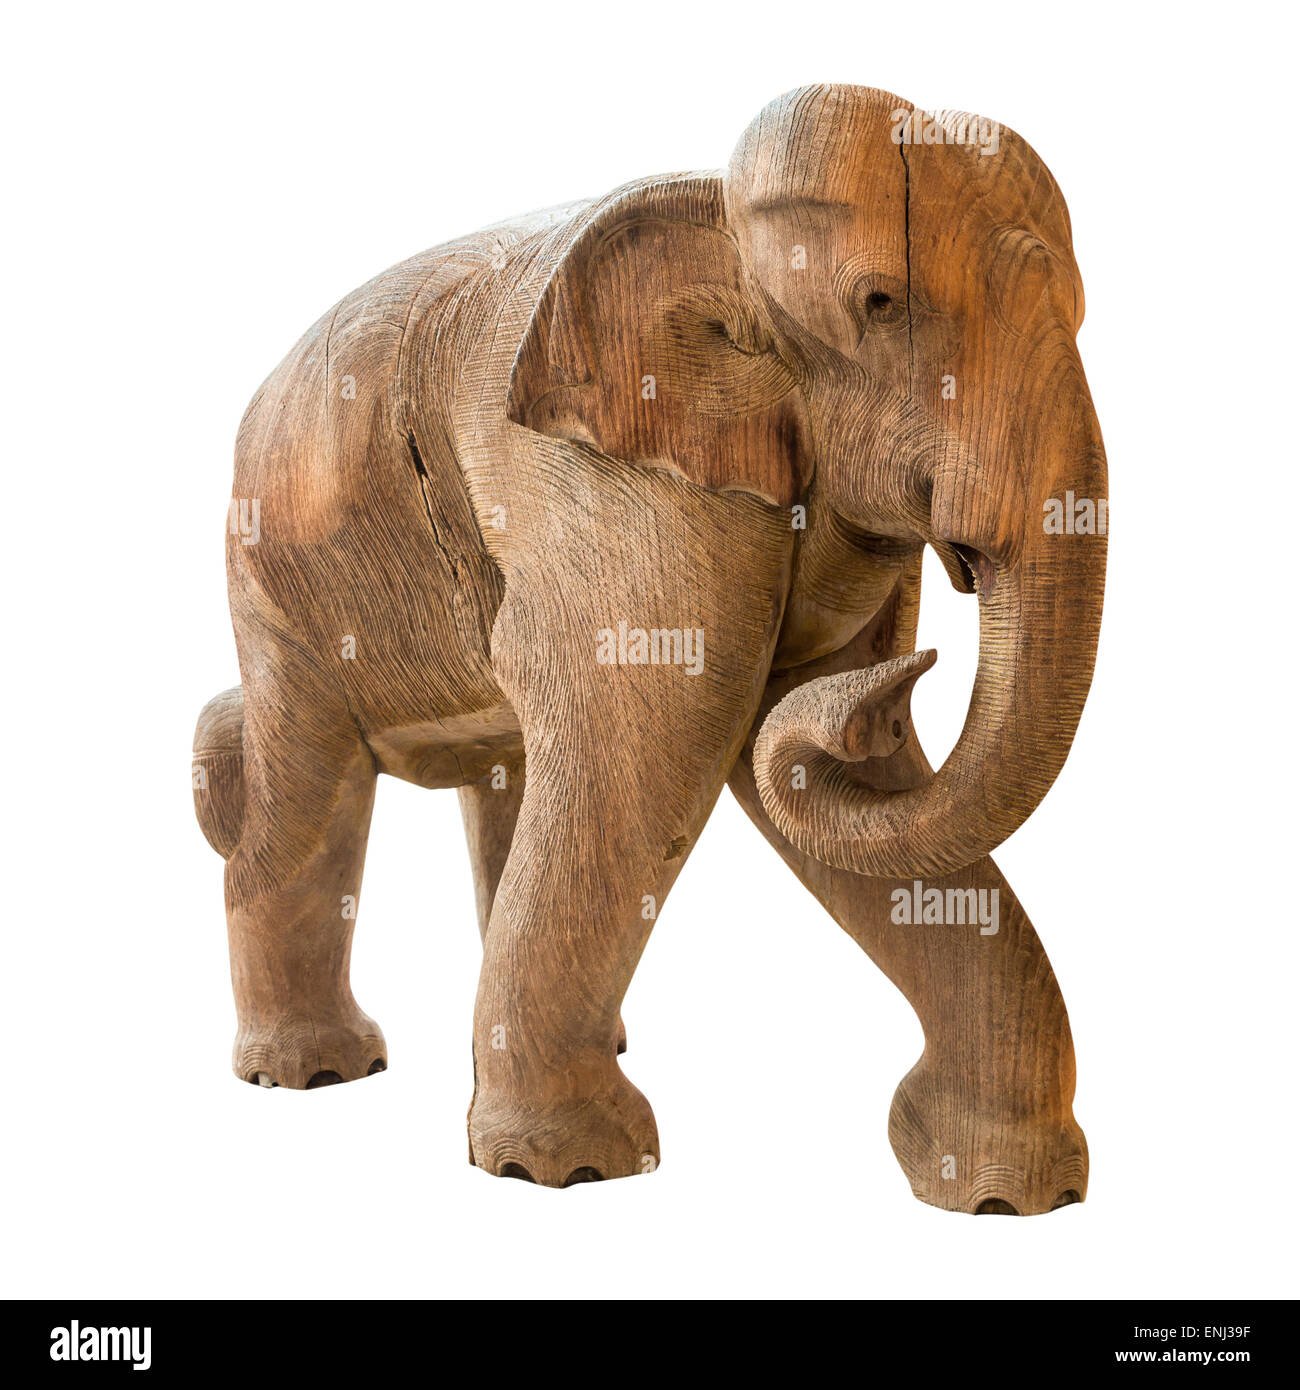 Old elephant model on isolated background Stock Photo